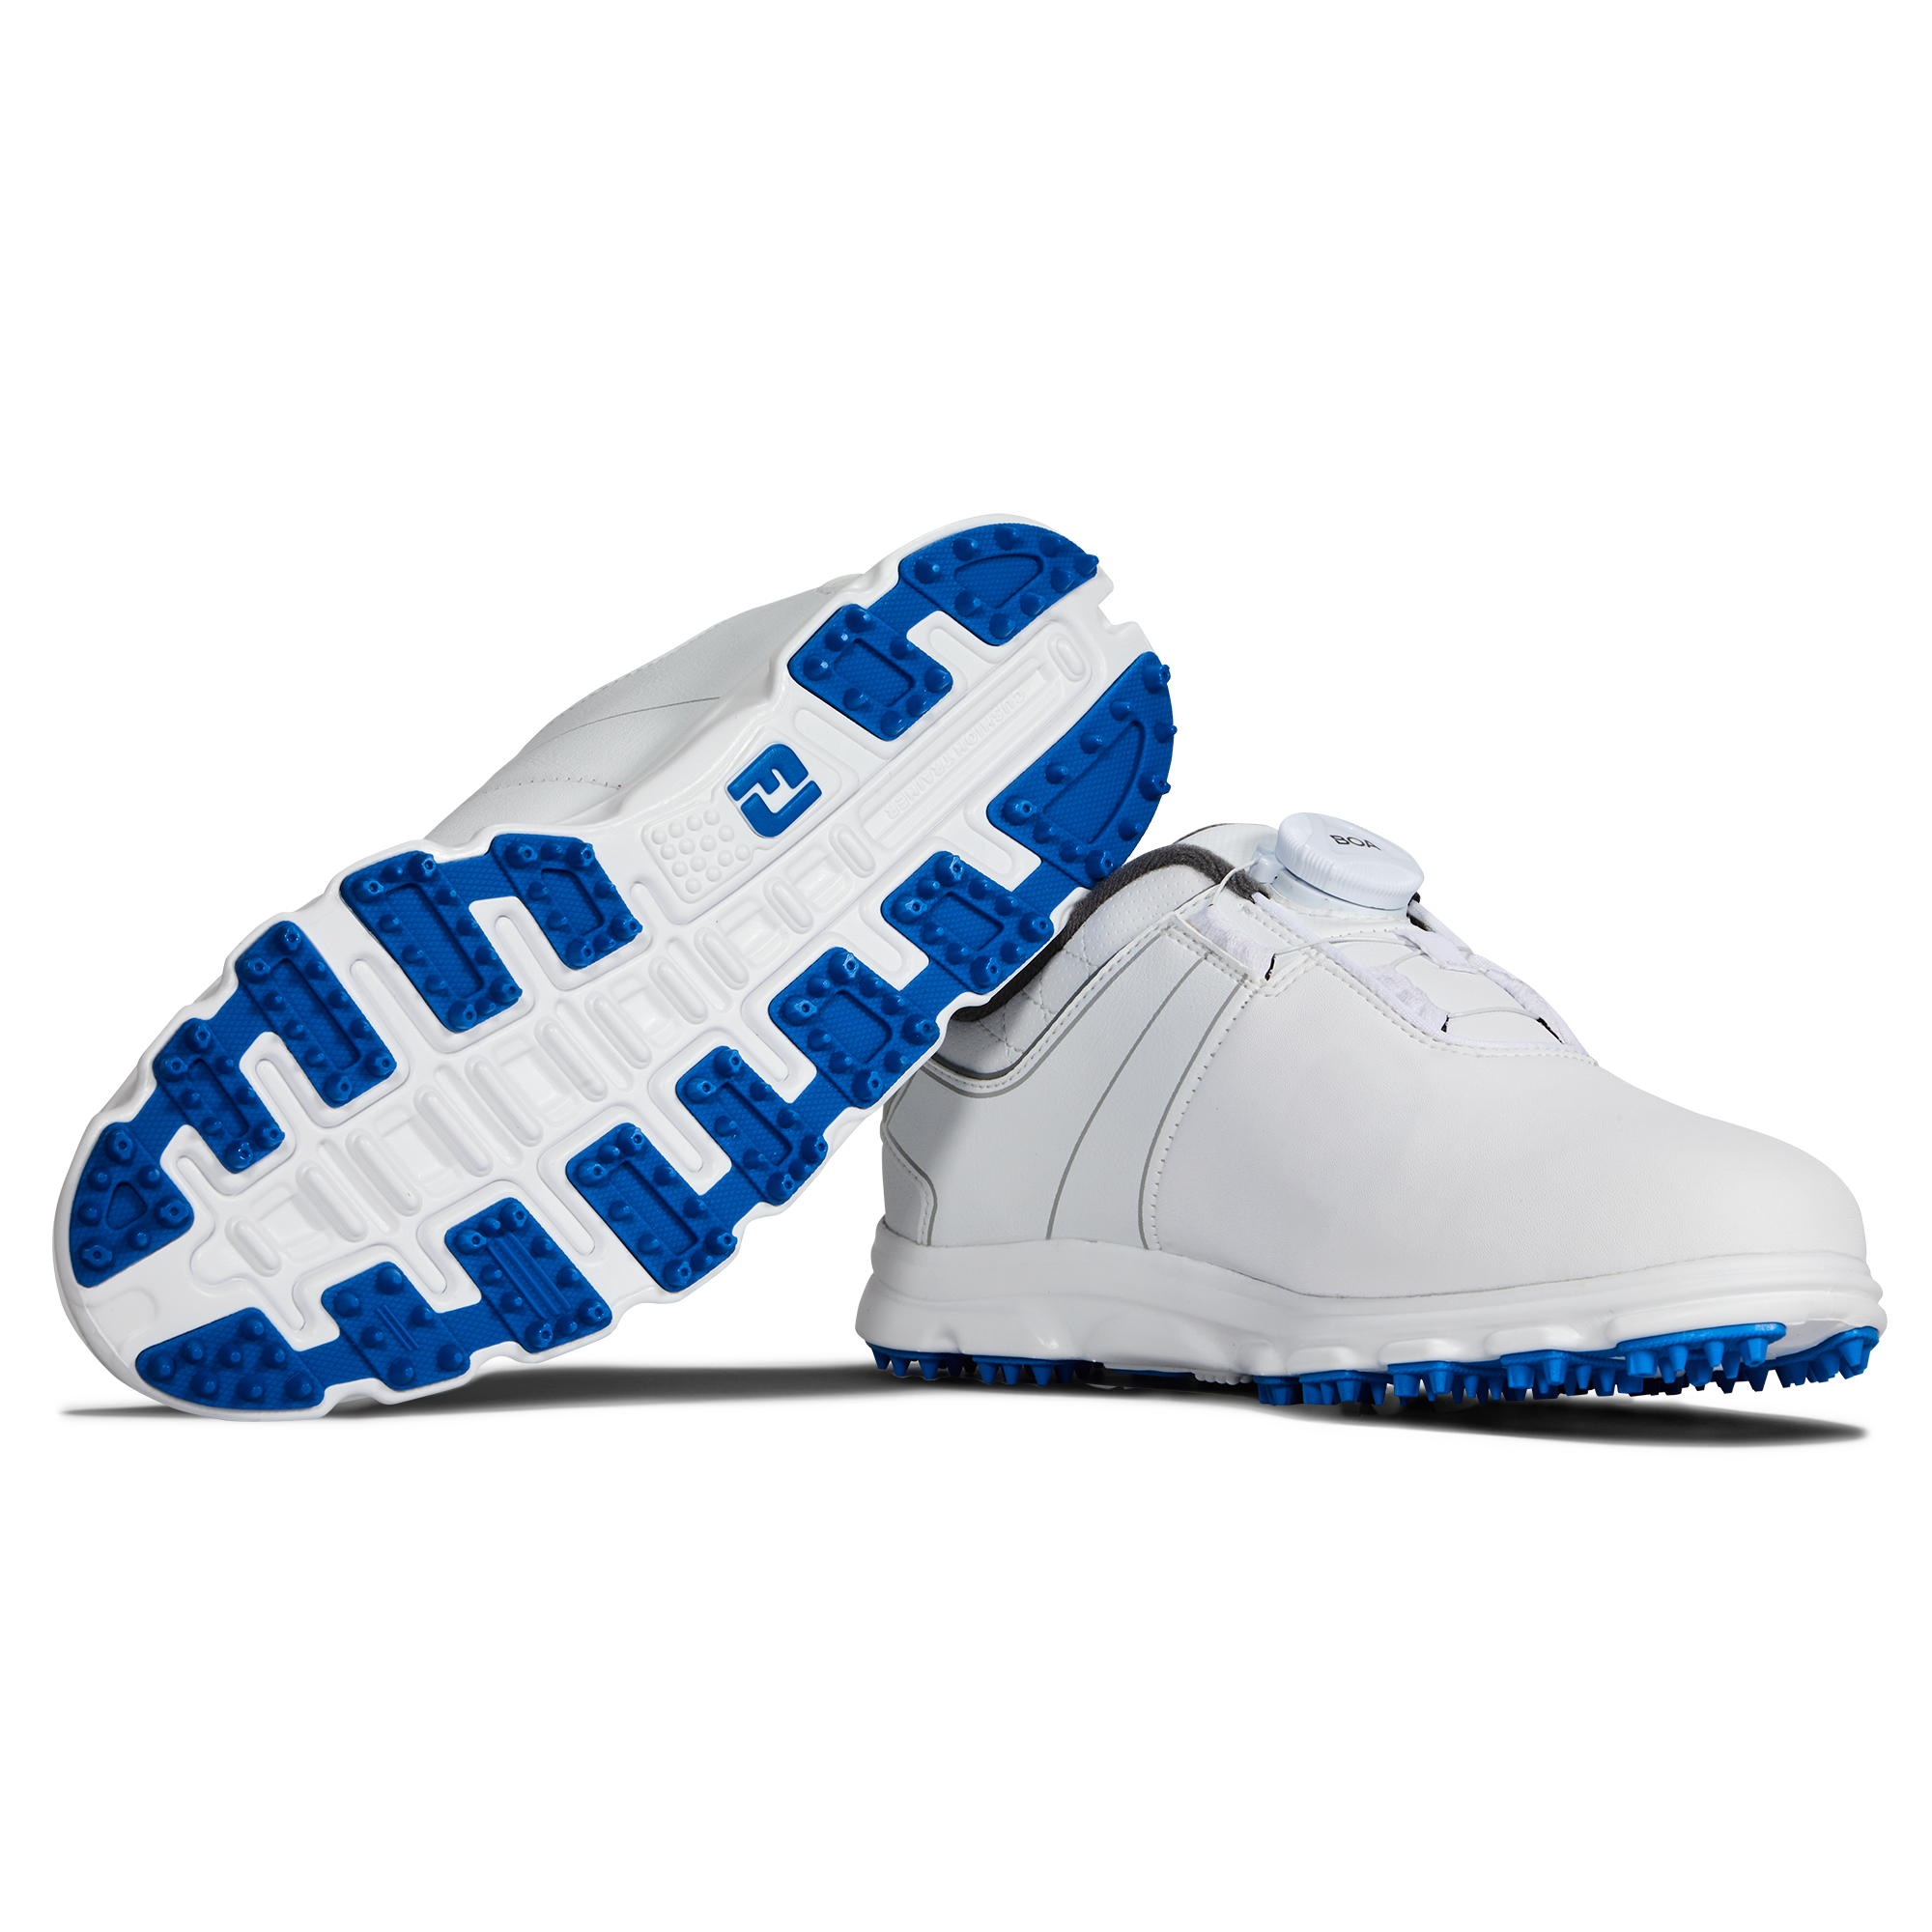 Pro|SL BOA Junior Golf Shoe